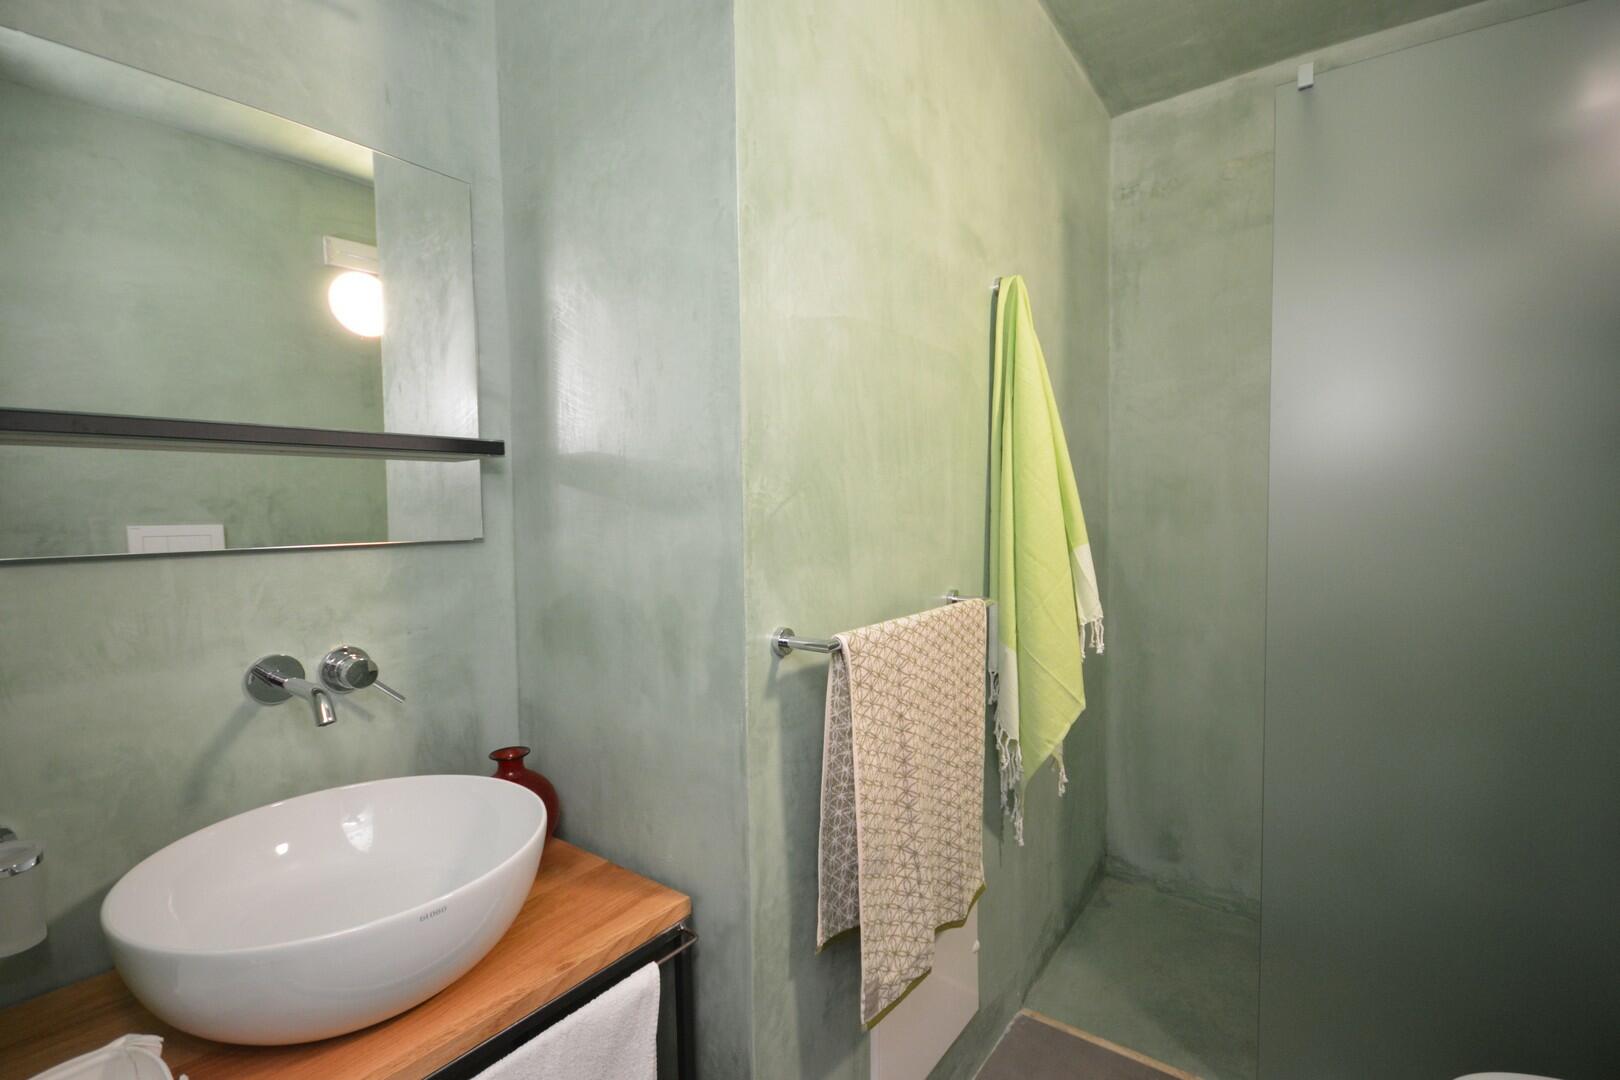 Sous-sol - chambre double D, salle de bain avec douche